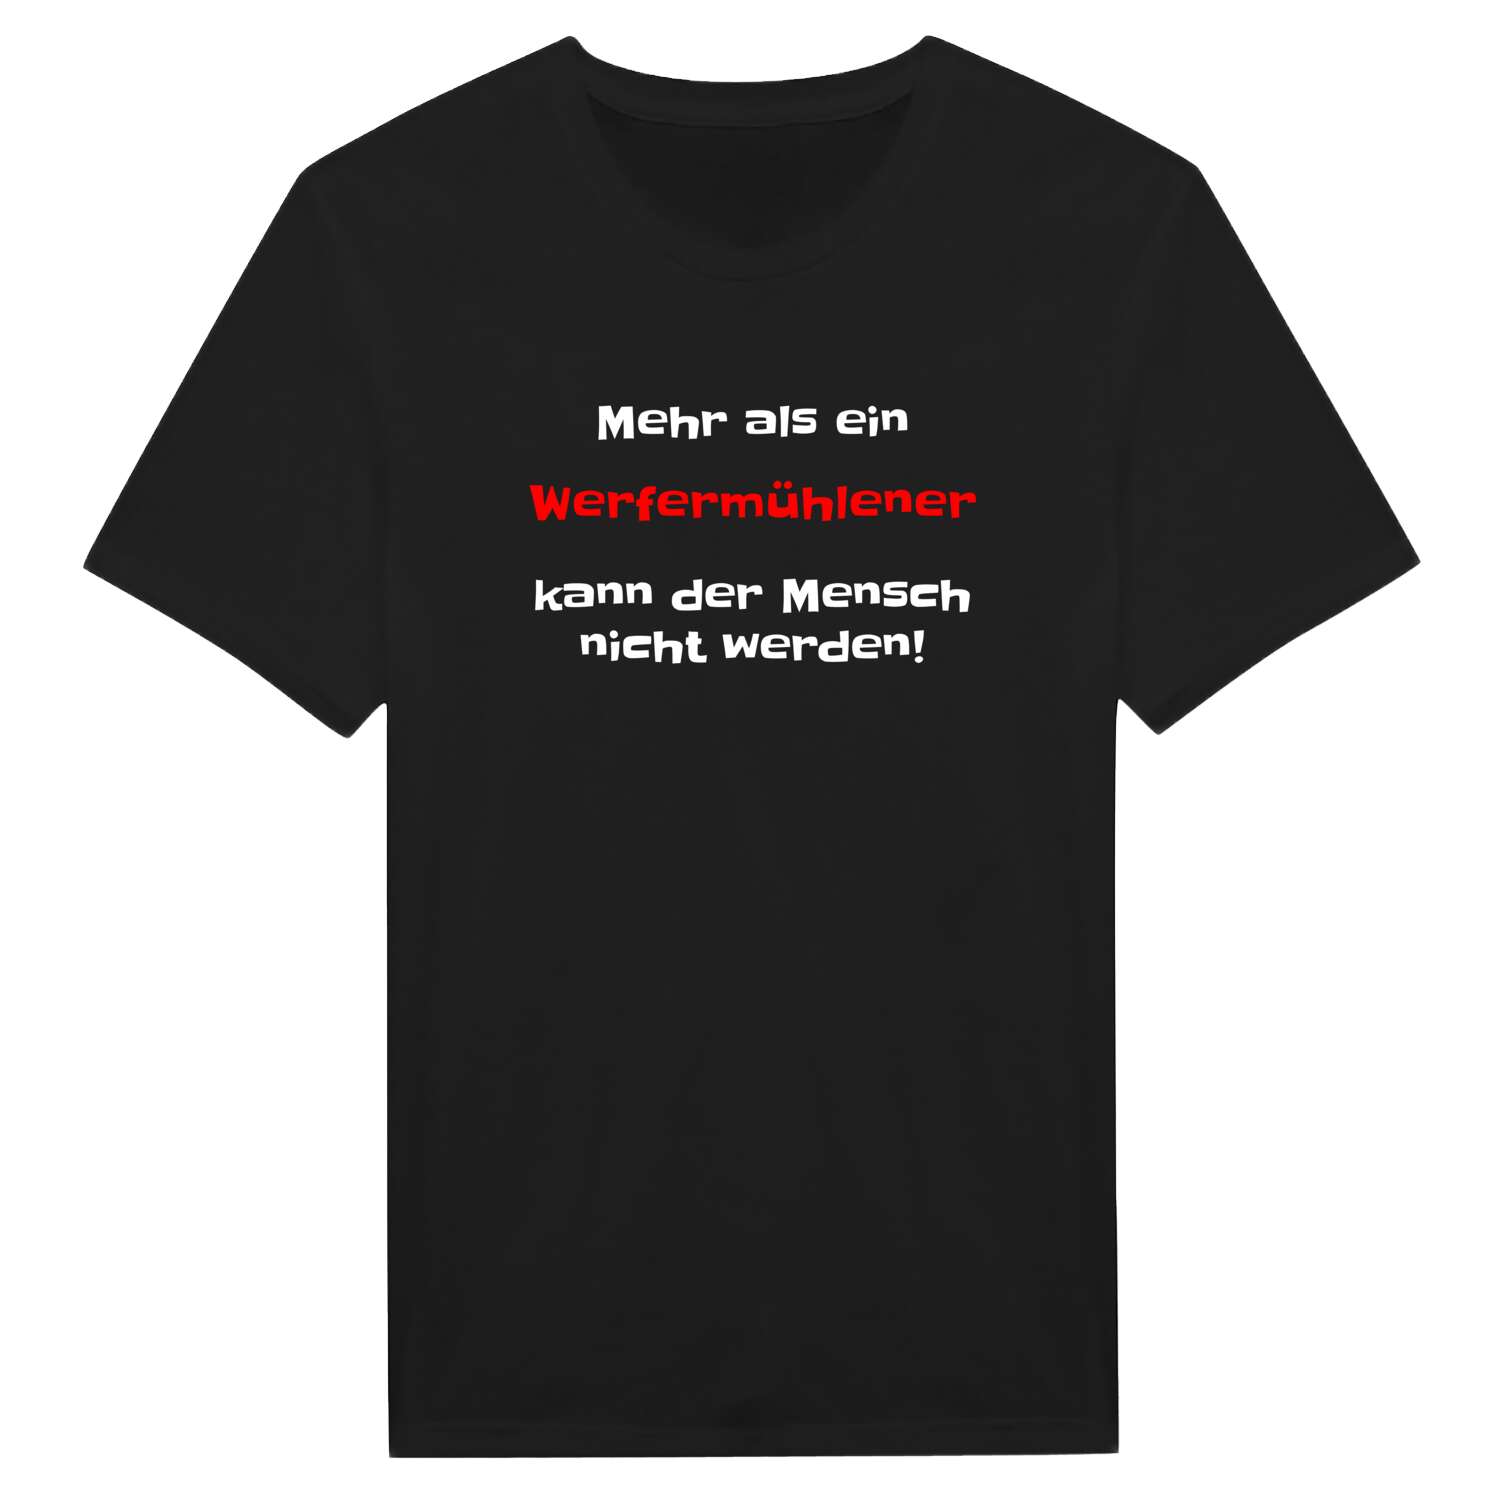 Werfermühle T-Shirt »Mehr als ein«